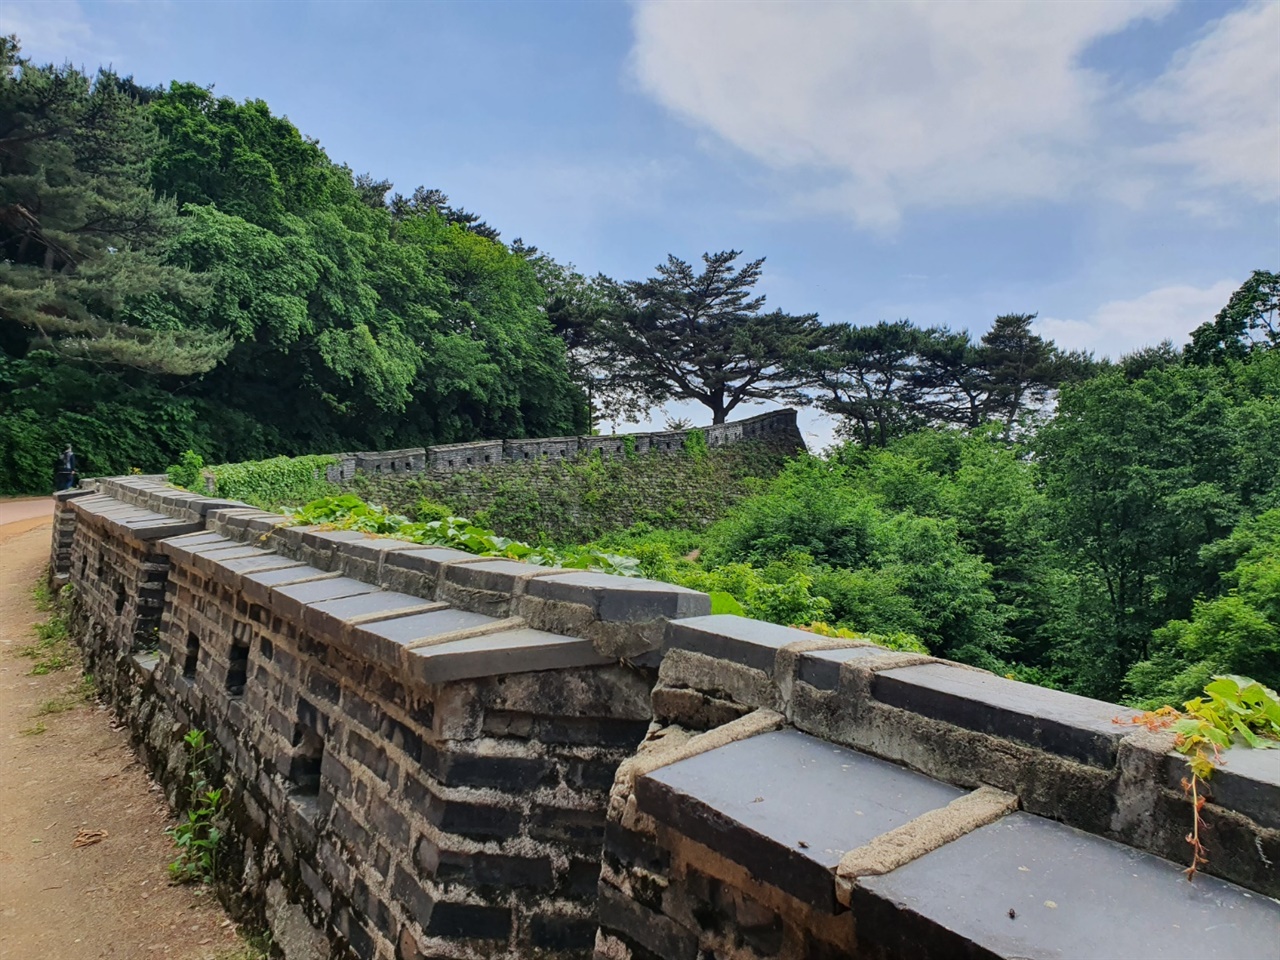 남한산성은 현재 세계문화유산으로 지정되어 있으며 한국 최초로 도립공원에 지정된 유서깊은 문화재다. 현재도 경기도민의 나들이터로 많은 사랑을 받고 있다.